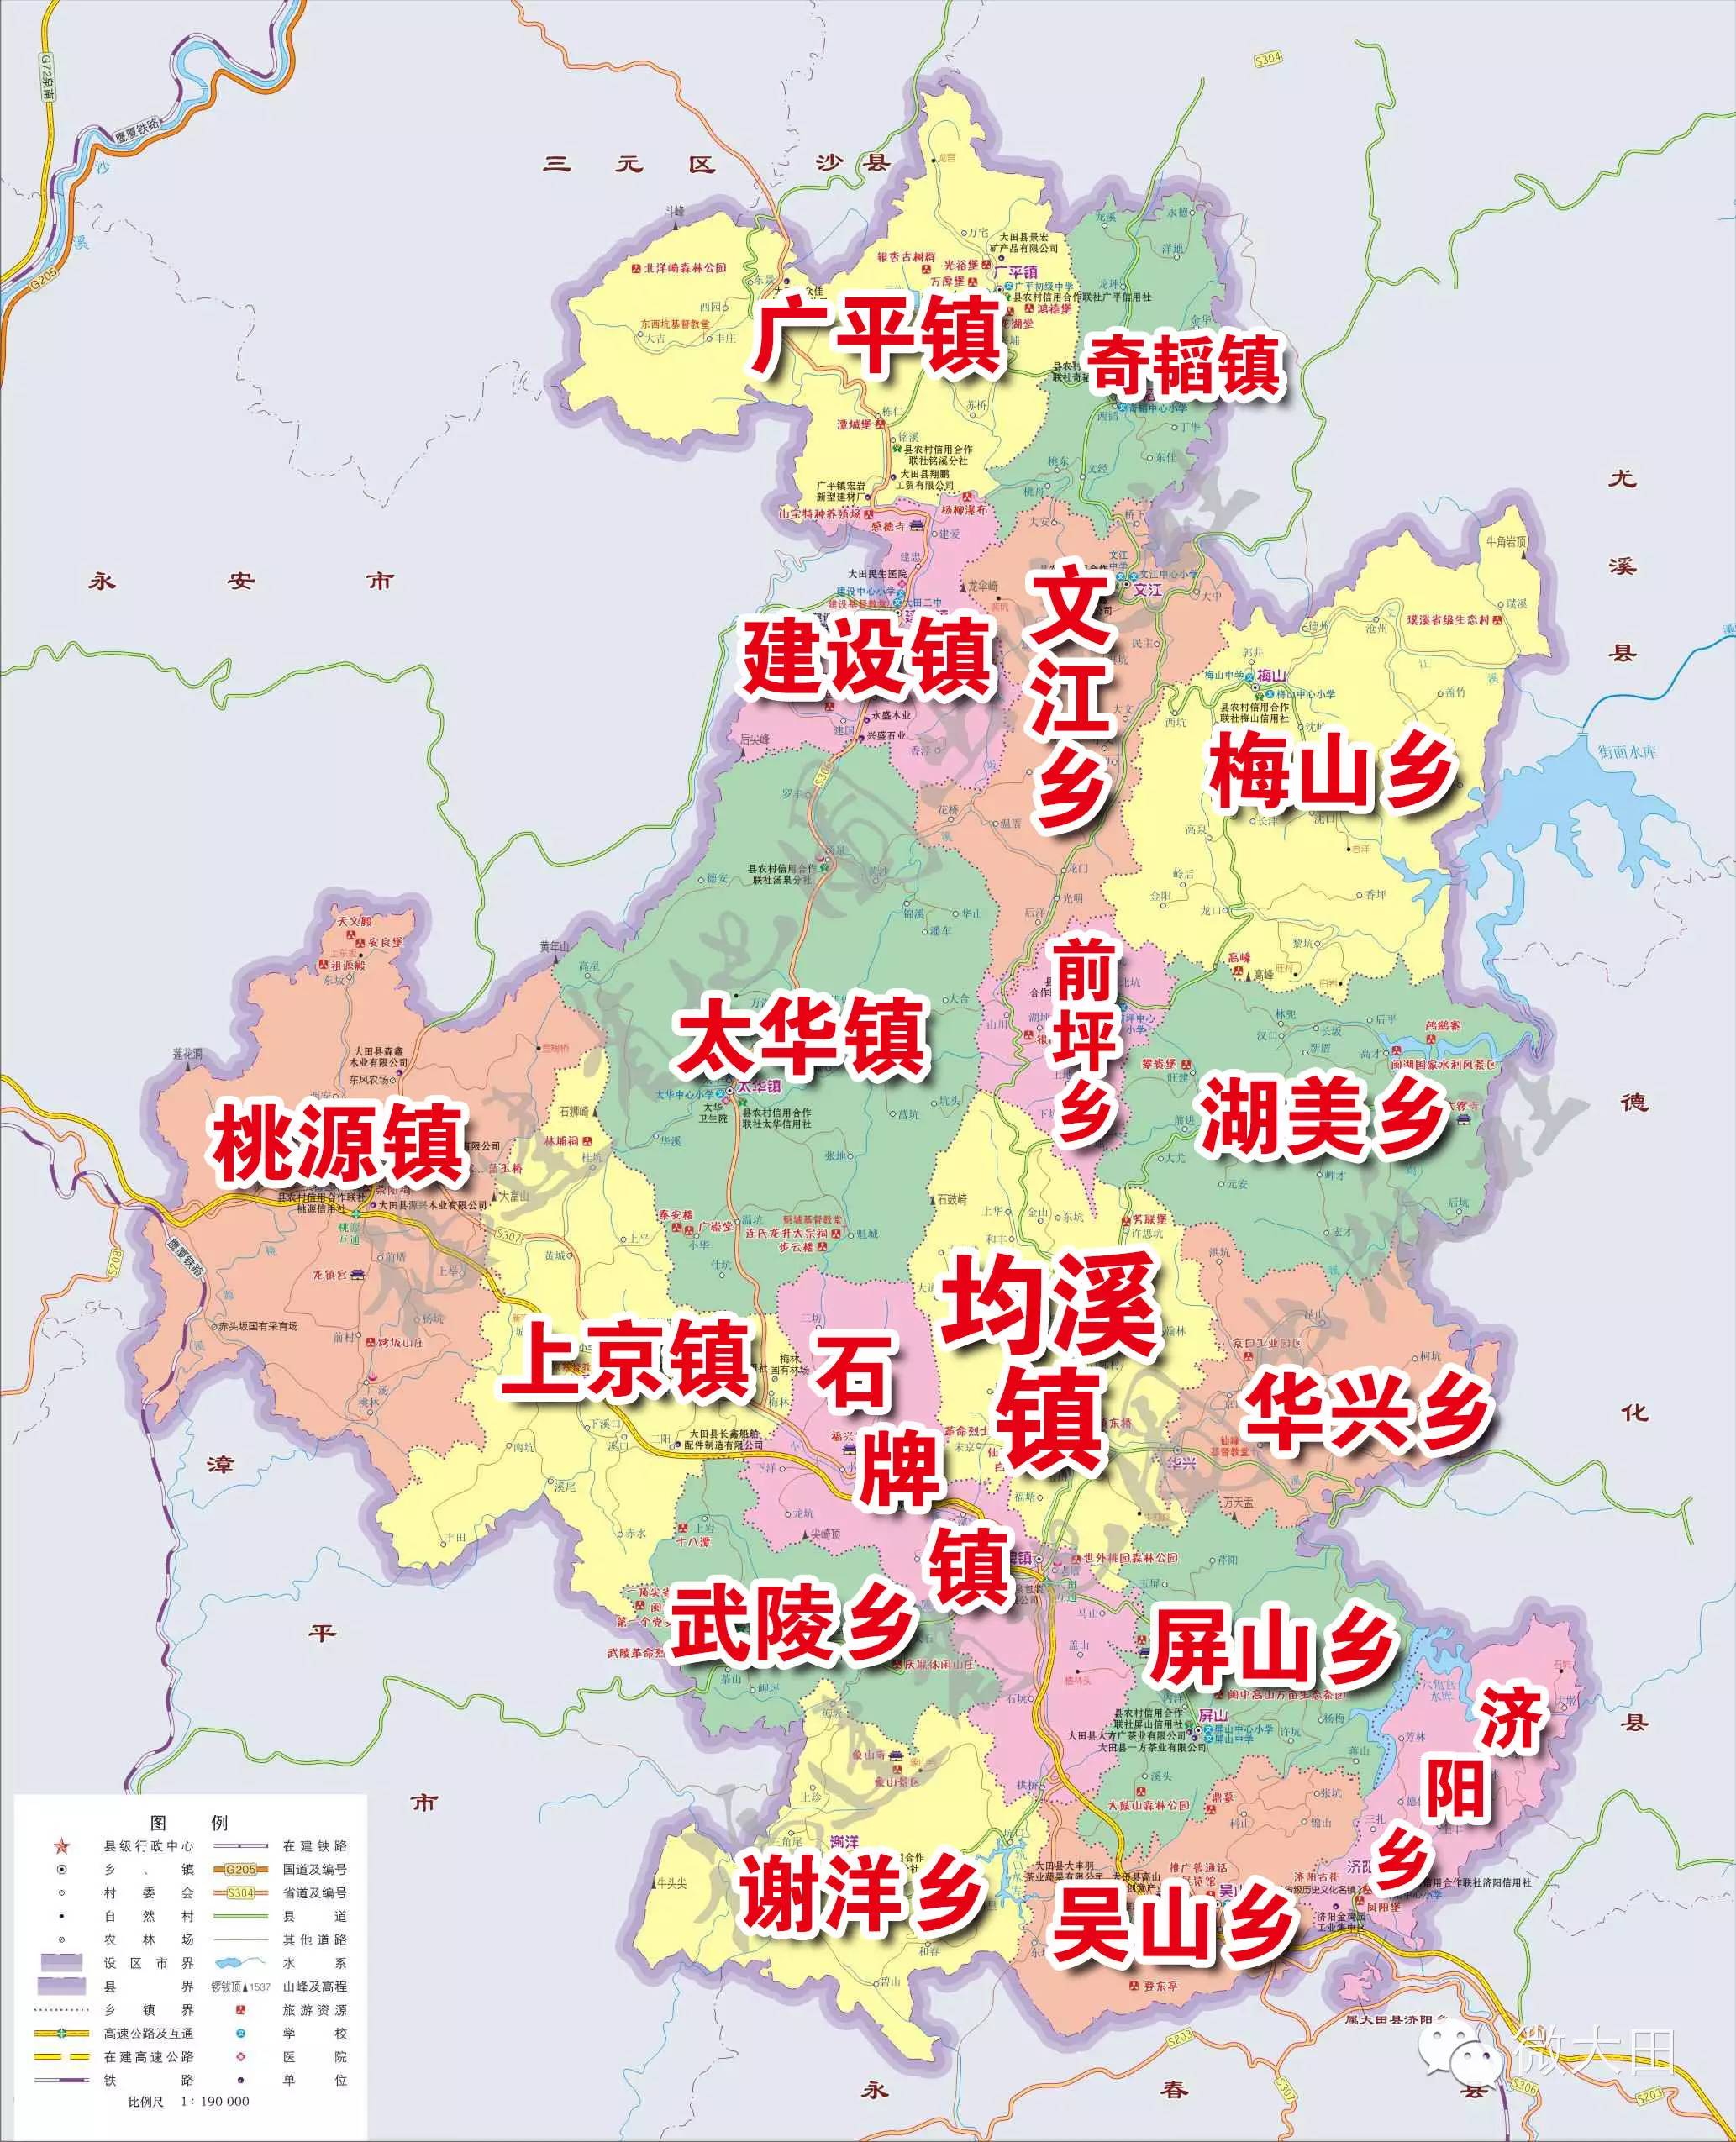 3 【地理】大田有多少个乡镇?